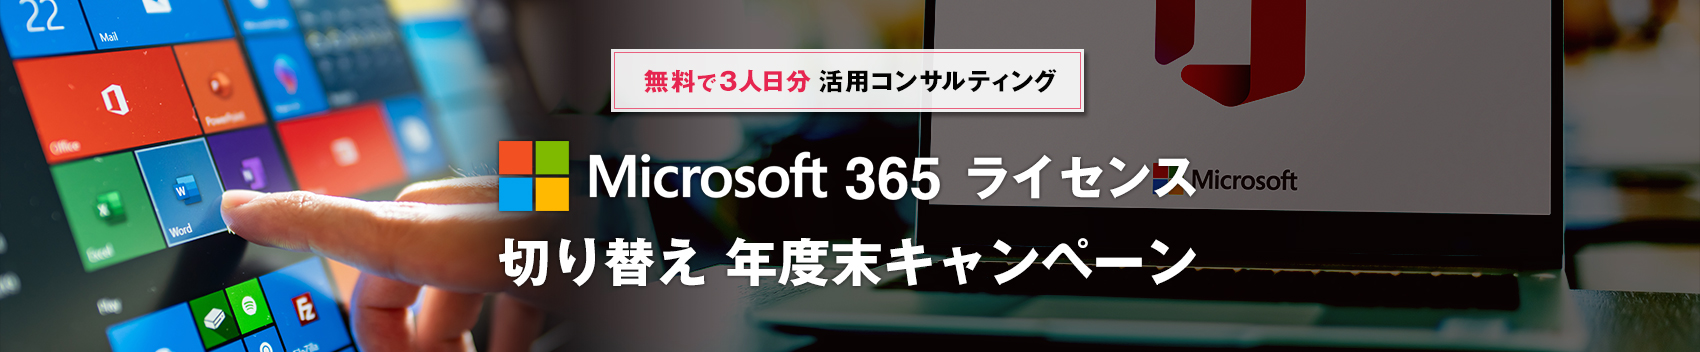 Microsoft365ライセンス切り替え年度末キャンペーン